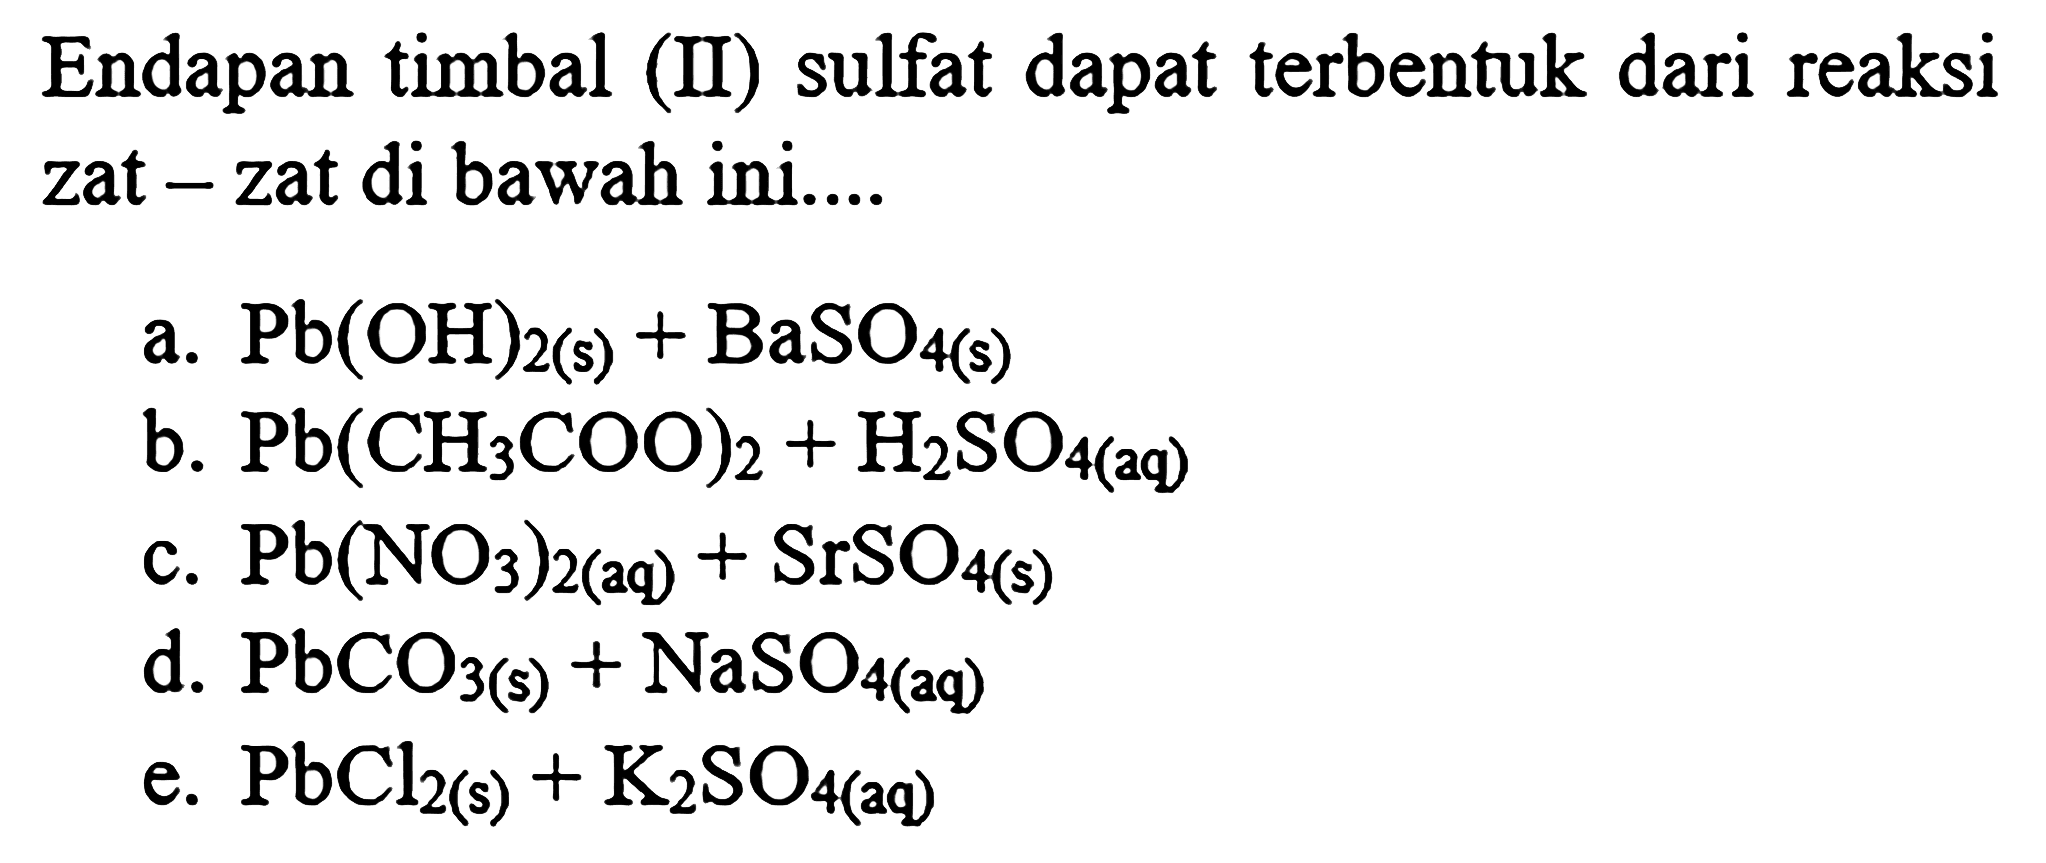 Endapan timbal (II) sulfat dapat terbentuk dari reaksi zat - zat di bawah ini....
a. Pb(OH)2(s)+BaSO4(s)
b. Pb(CH3 COO)2+H2 SO4(2 q)
c. Pb(NO3)2(aq)+SrSO4(s)
d. PbCO3(s)+NaSO4(a q)
e. PbCl2 (s)  +K2 SO4   (aq) 